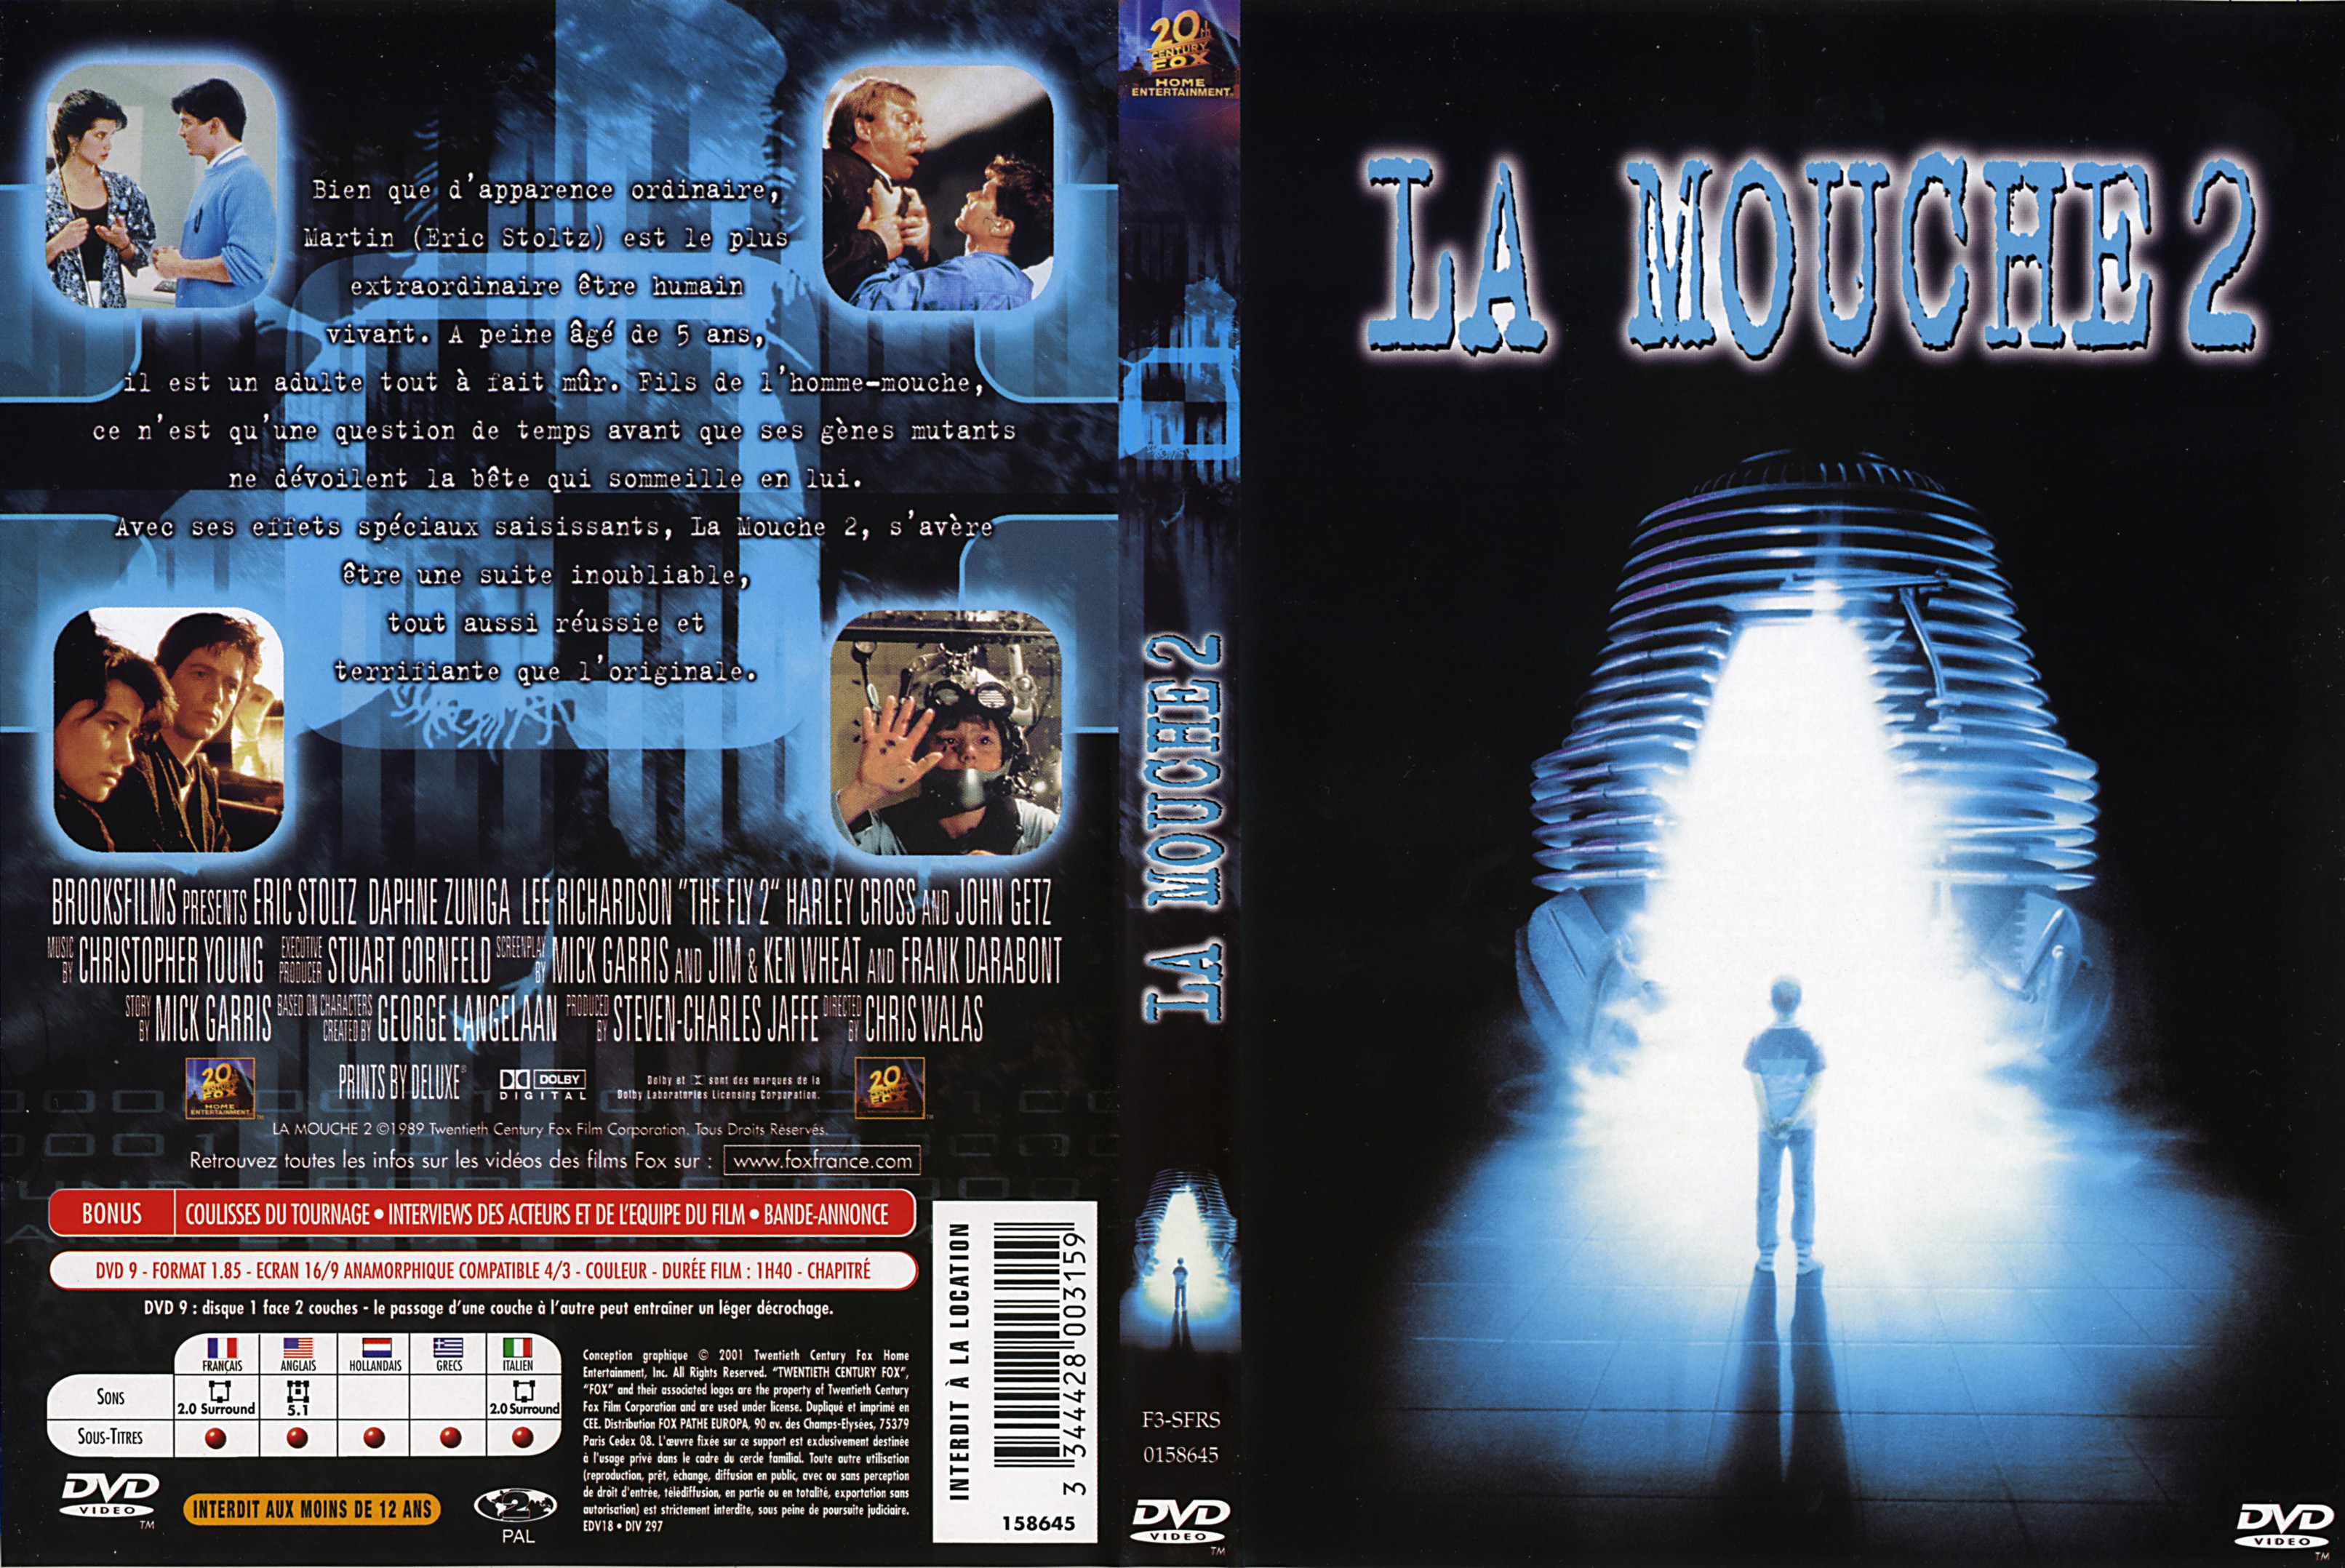 Jaquette DVD La mouche 2